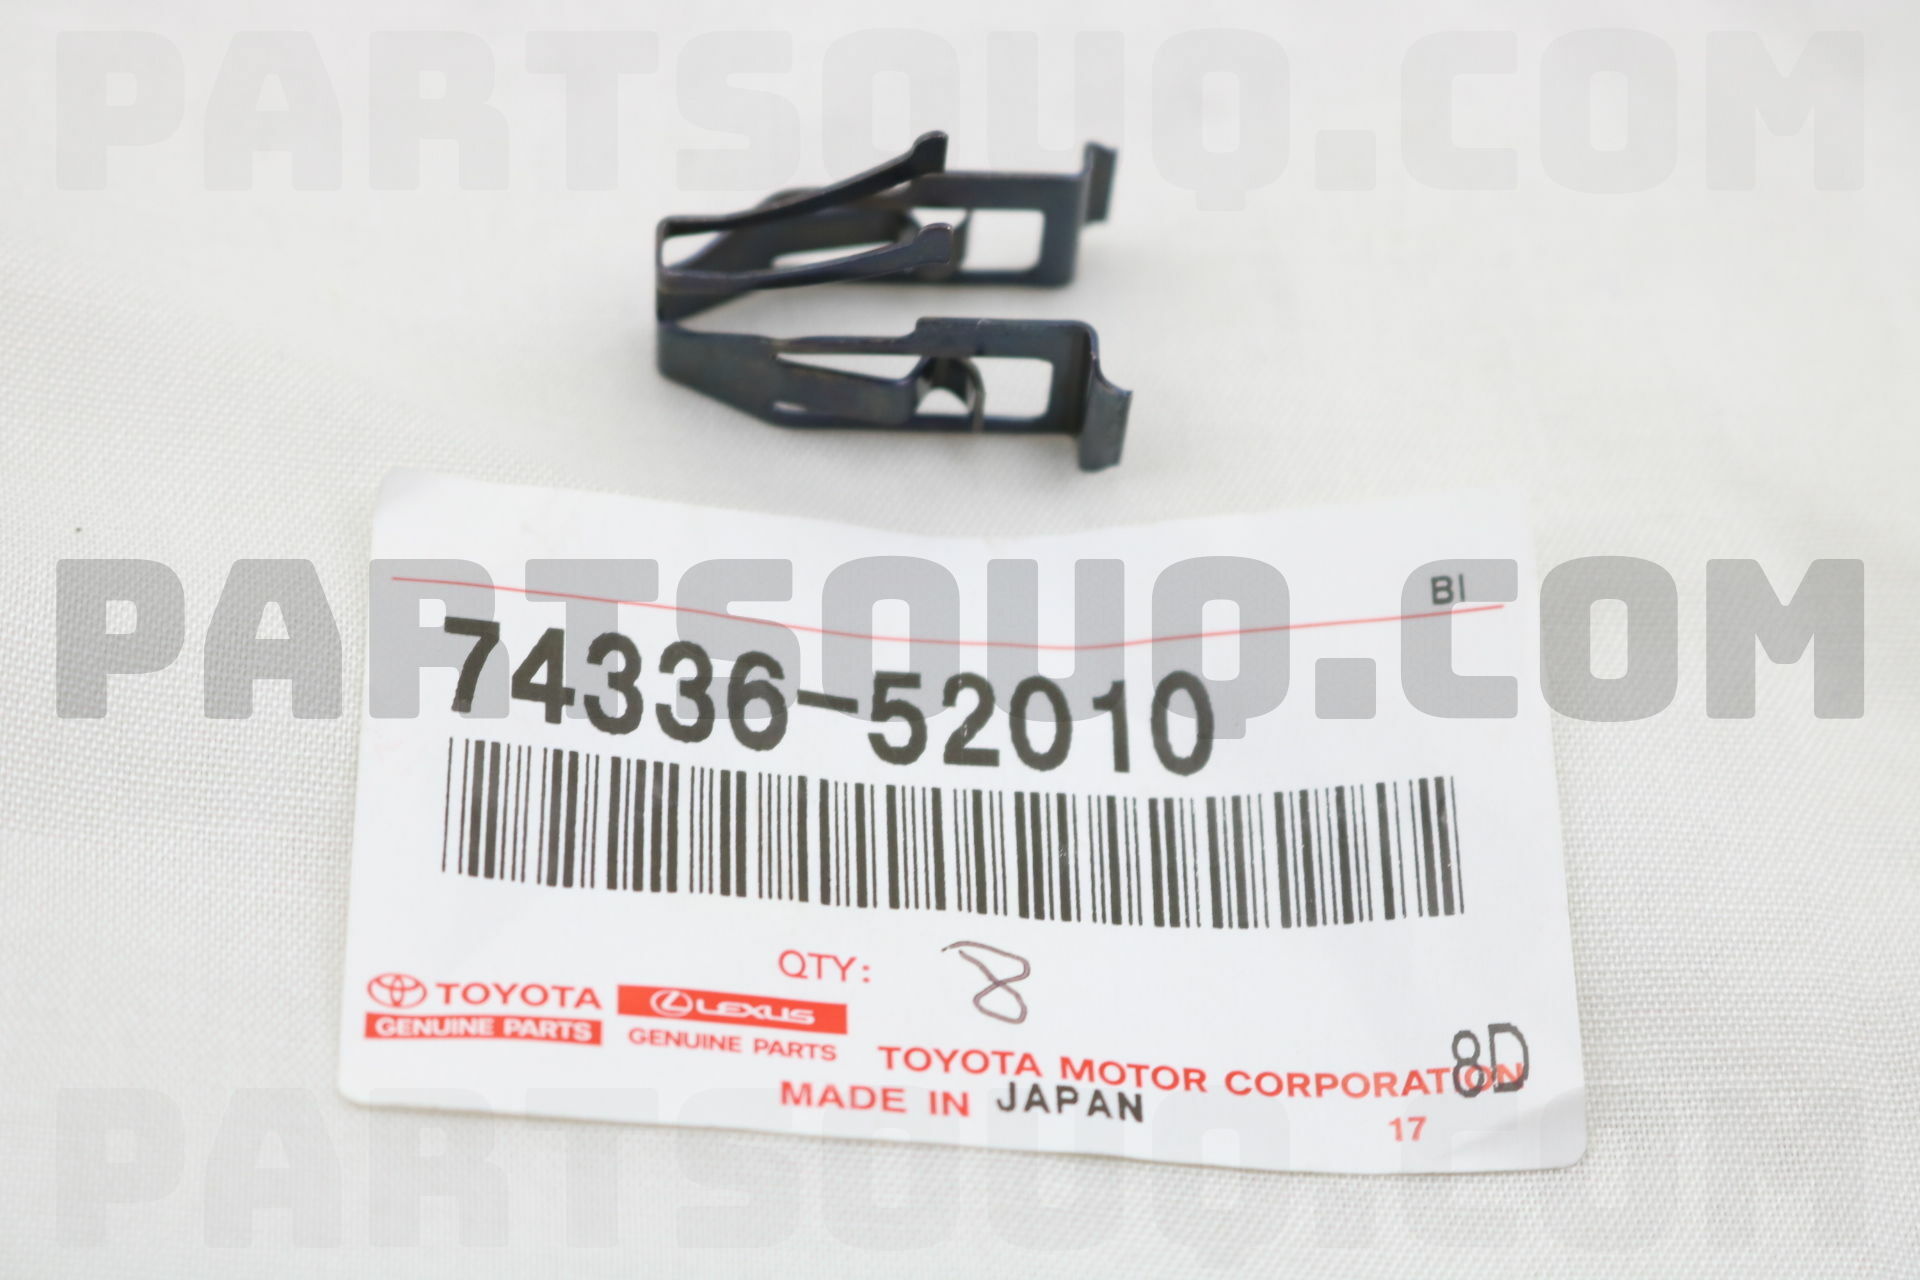 Clip 74336-52010 Visor Arm Set Genuine Toyota Parts 